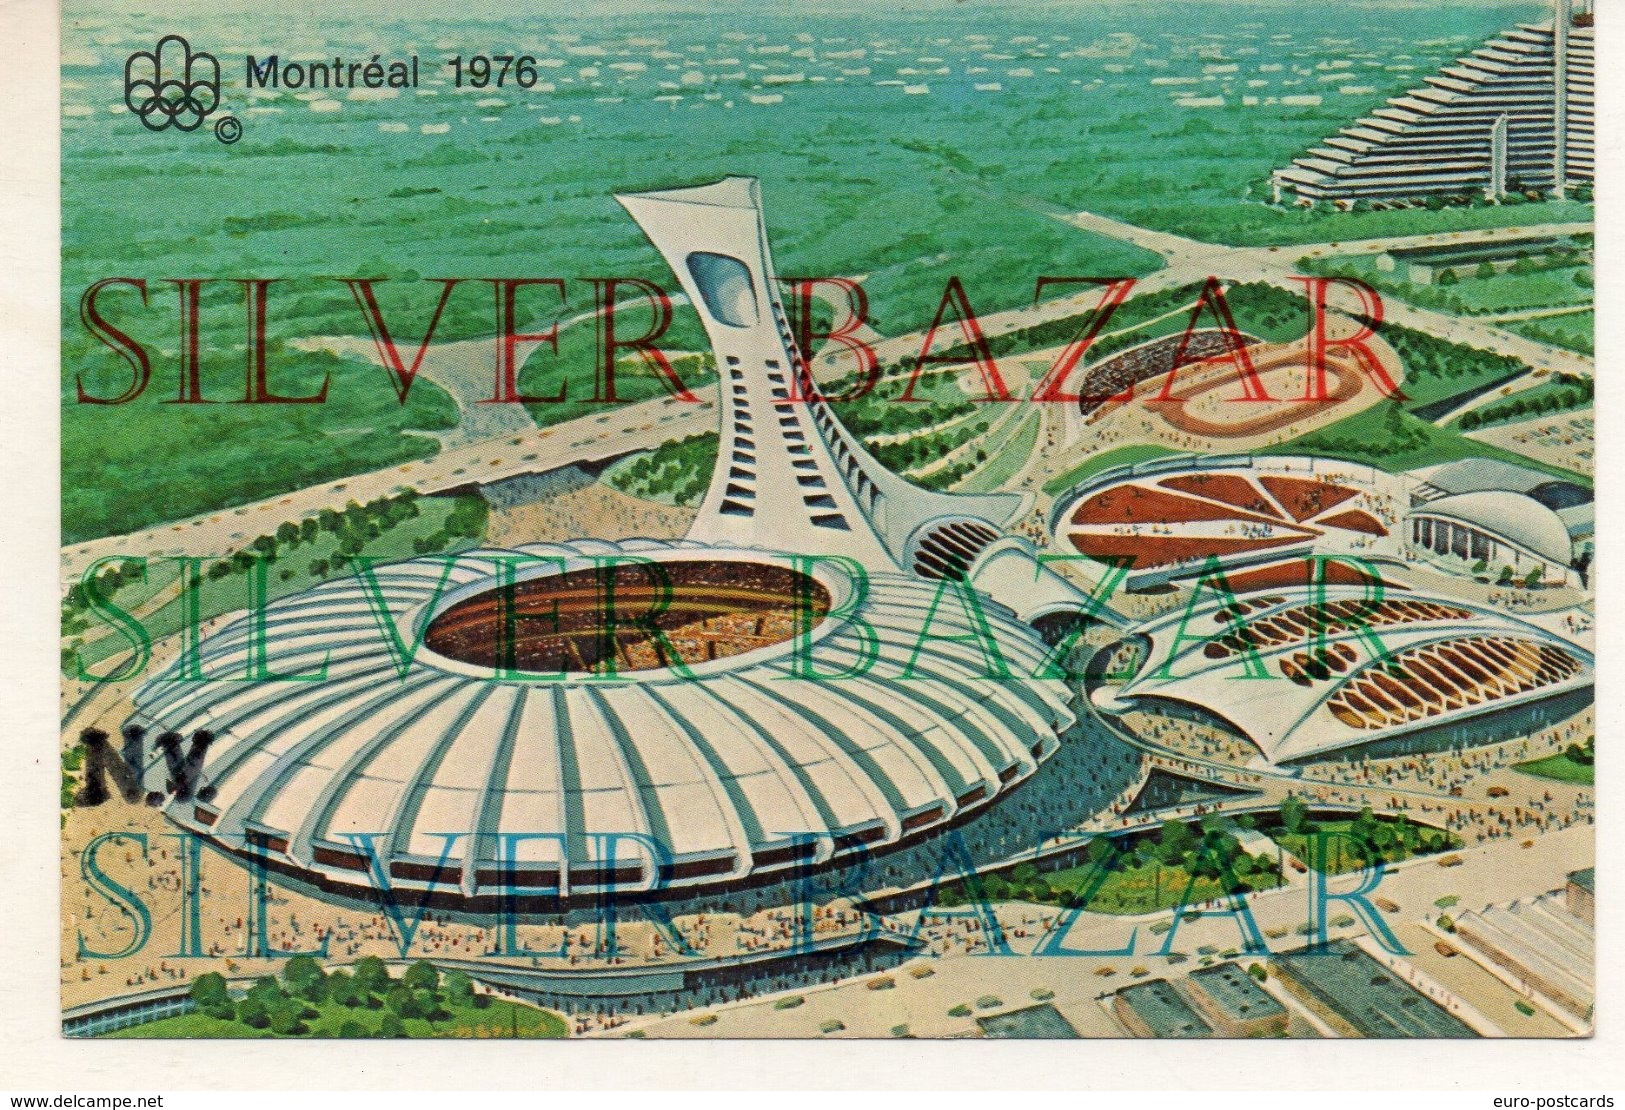 PARCO OLIMPICO DI MONTREAL STADIO TORRE E VELODROMO - CANADA QUEBEC - OLIMPIADI 1976 - Giochi Olimpici